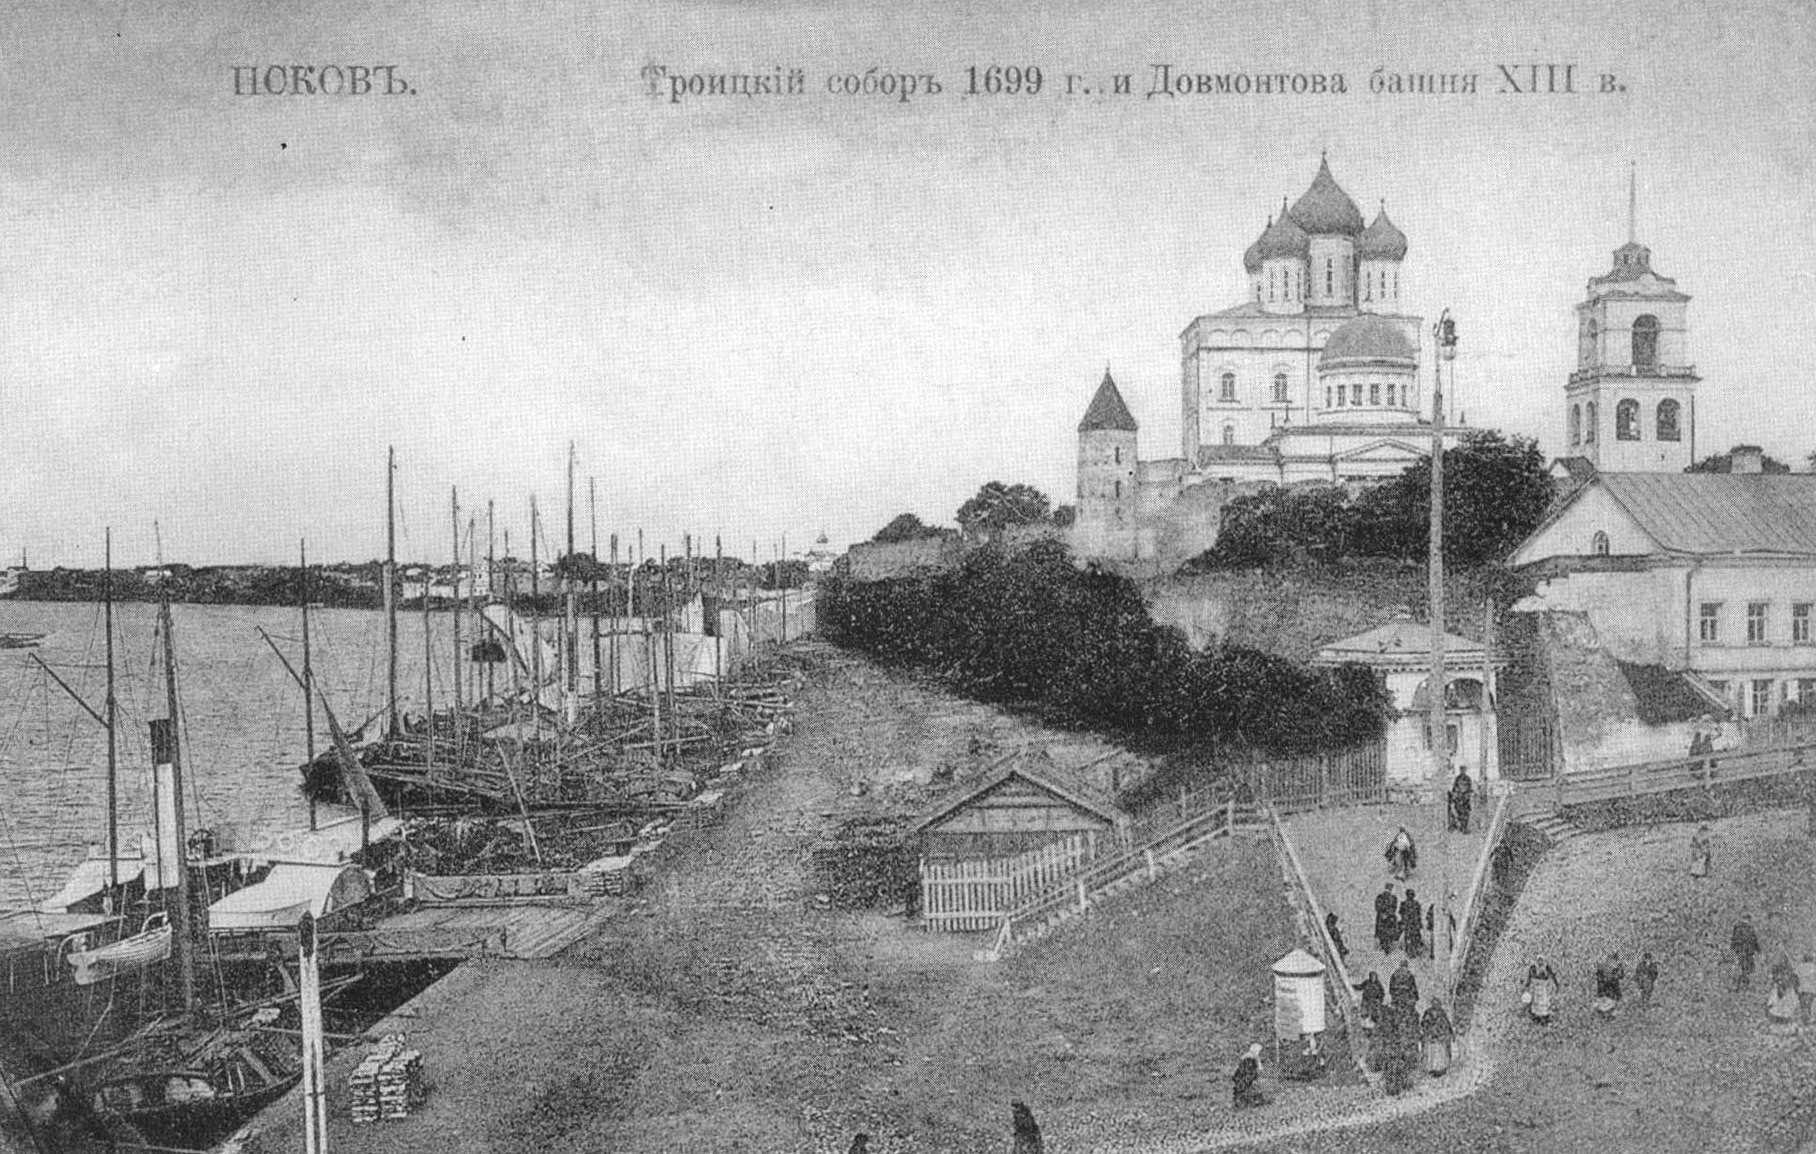 Псков. Троицкий собор 1699 г. и Довмонтова башня XIII века.